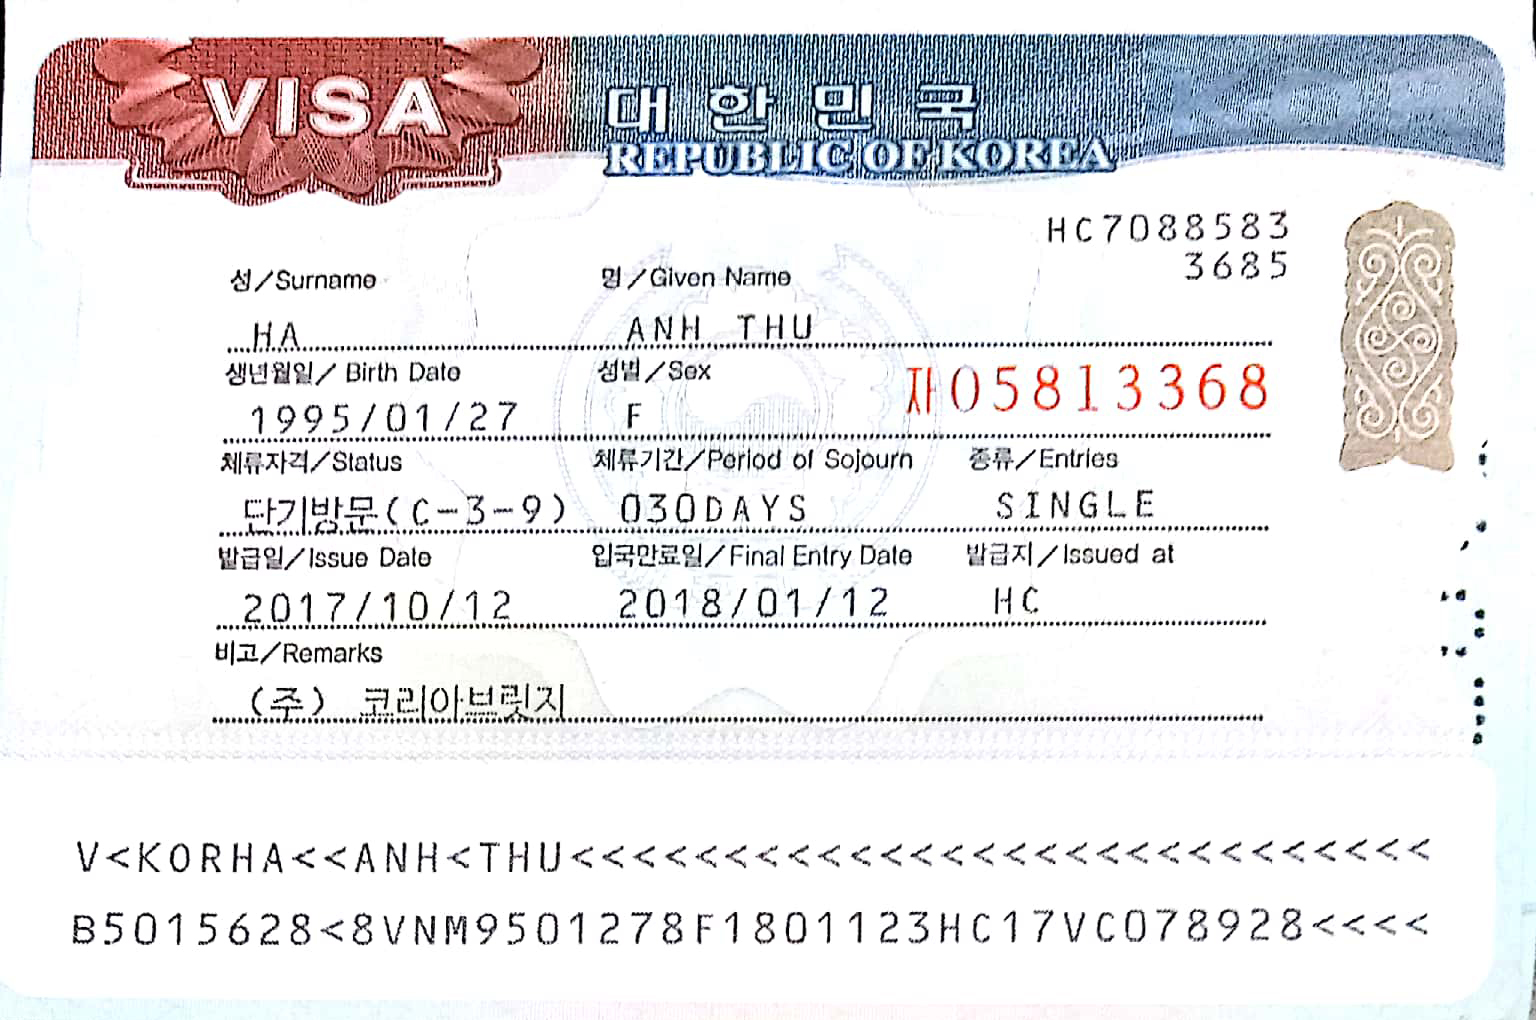 /files/images/Visa/visa-han-ha-anh-thu.jpg